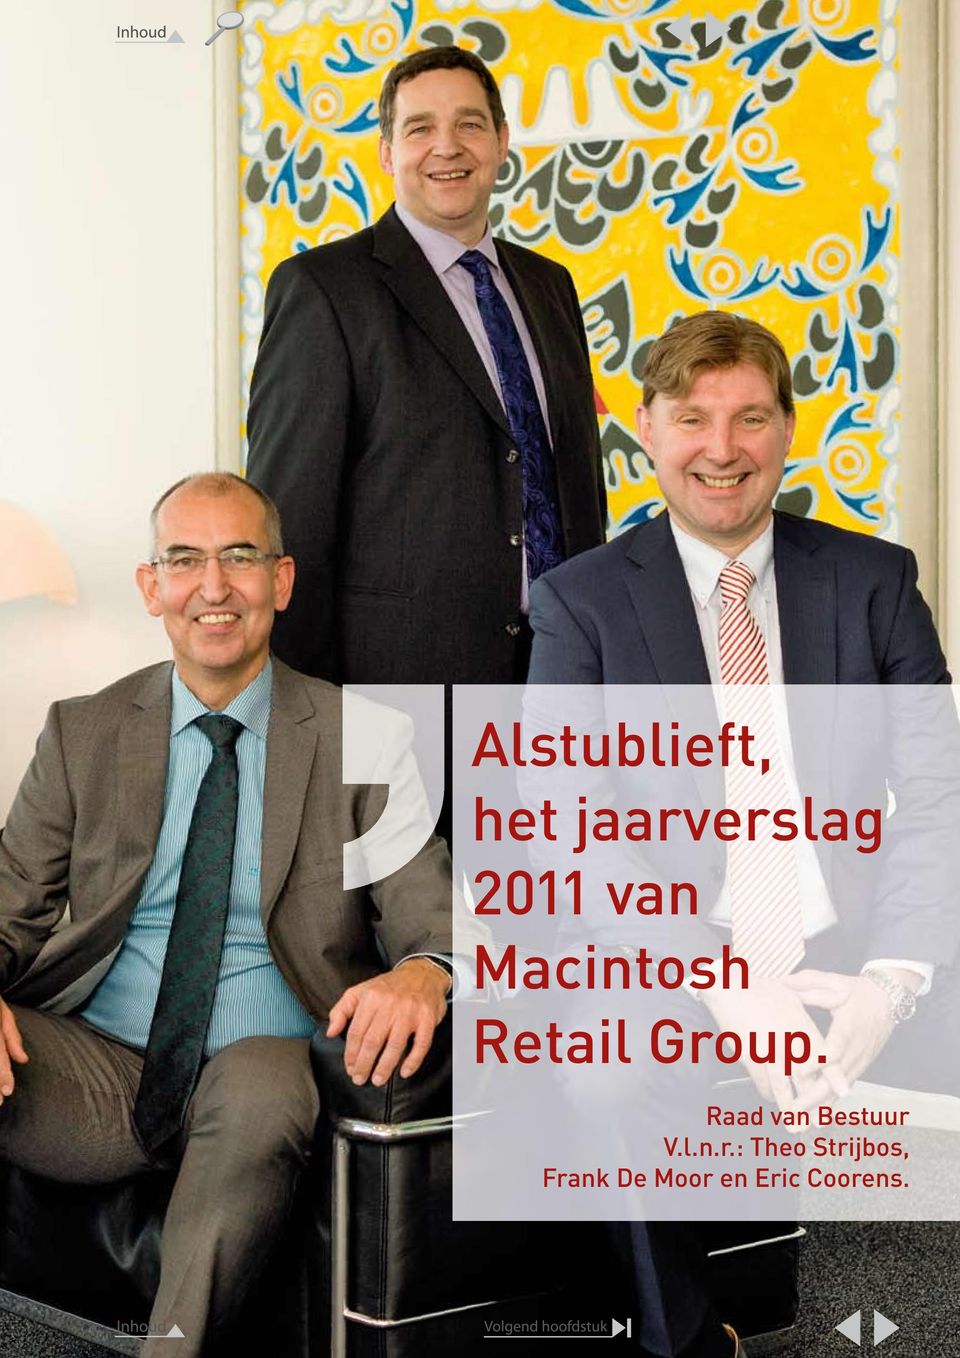 Macintosh Retail Group.